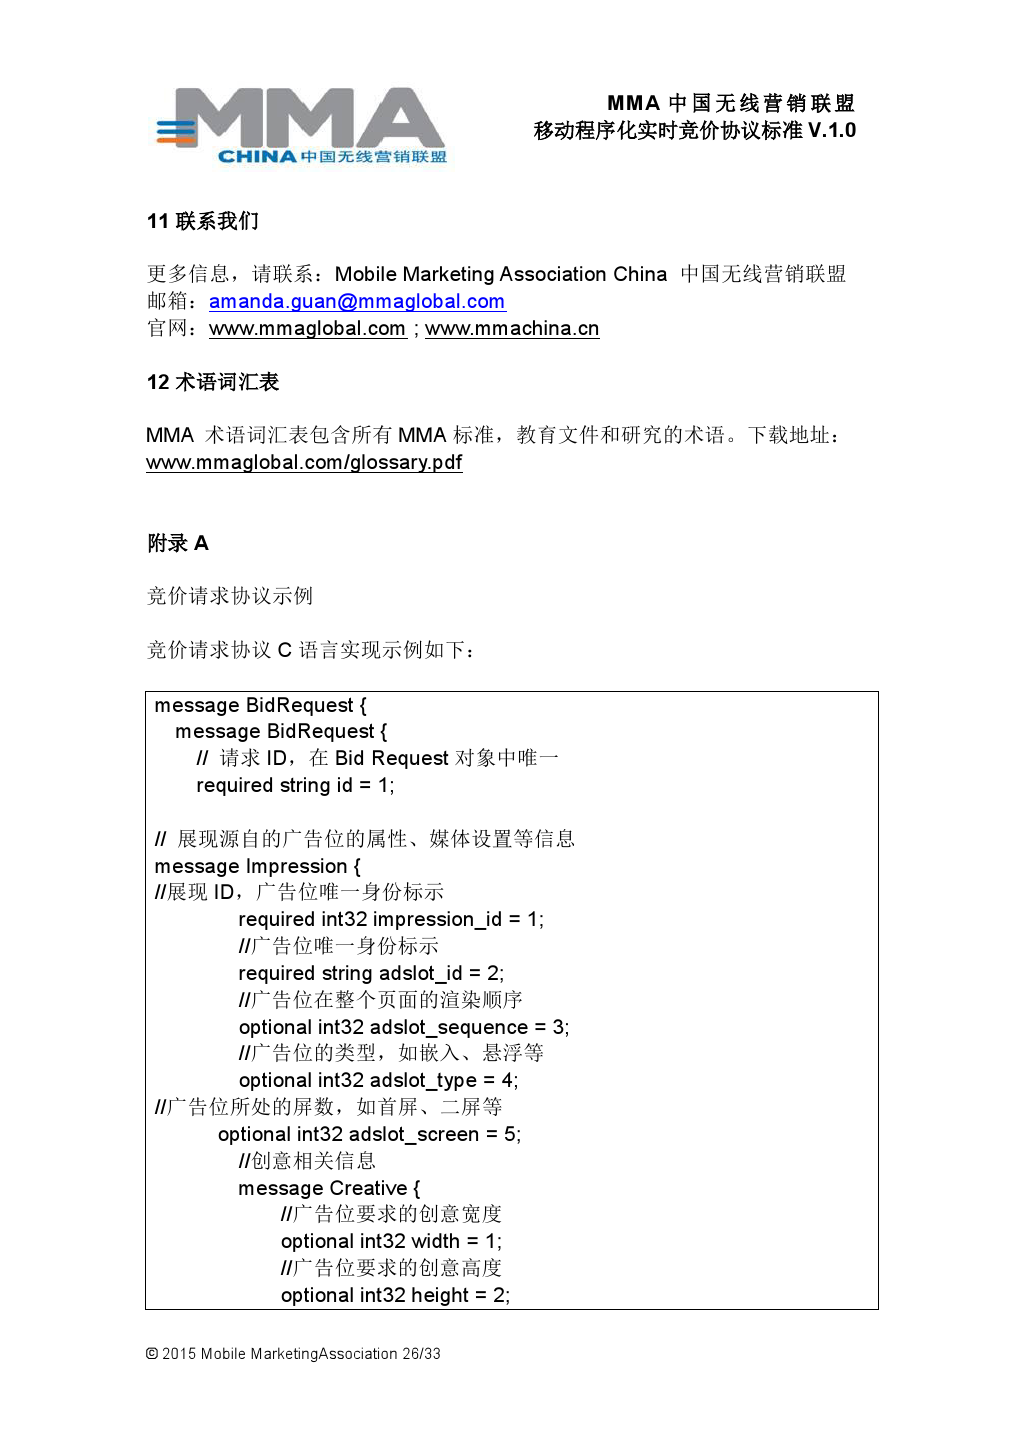 MMA中国无线营销联盟移动程序化实时竞价协议标准V.1.0_000027